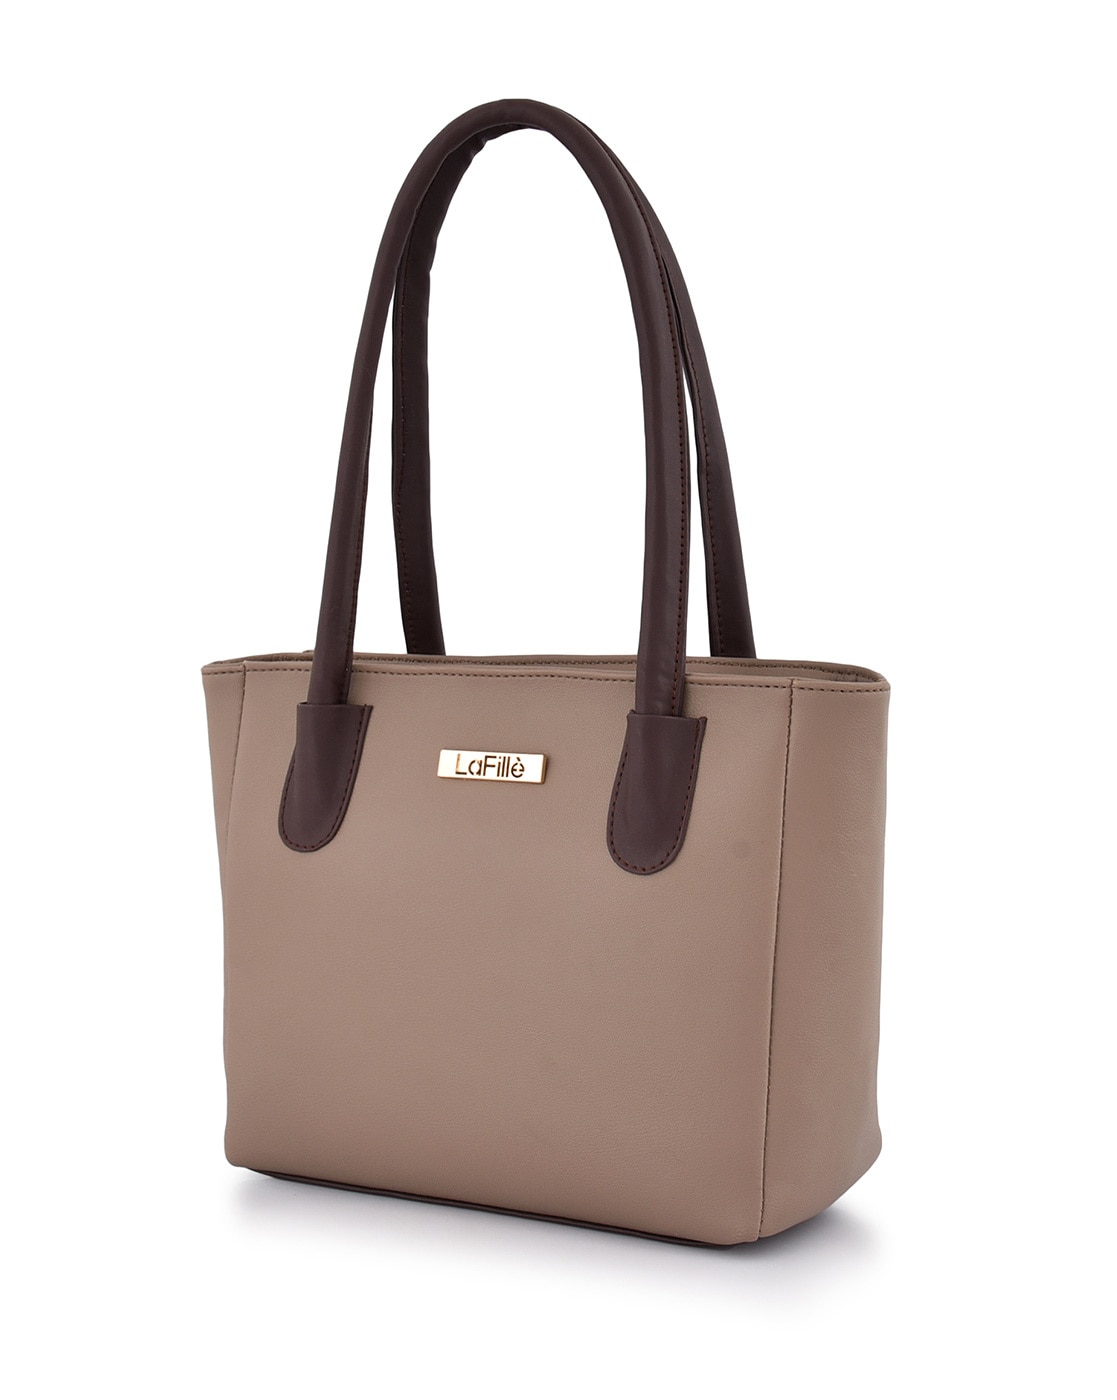 Buy Caprese Ladies Hand Bag Online - Lulu Hypermarket India